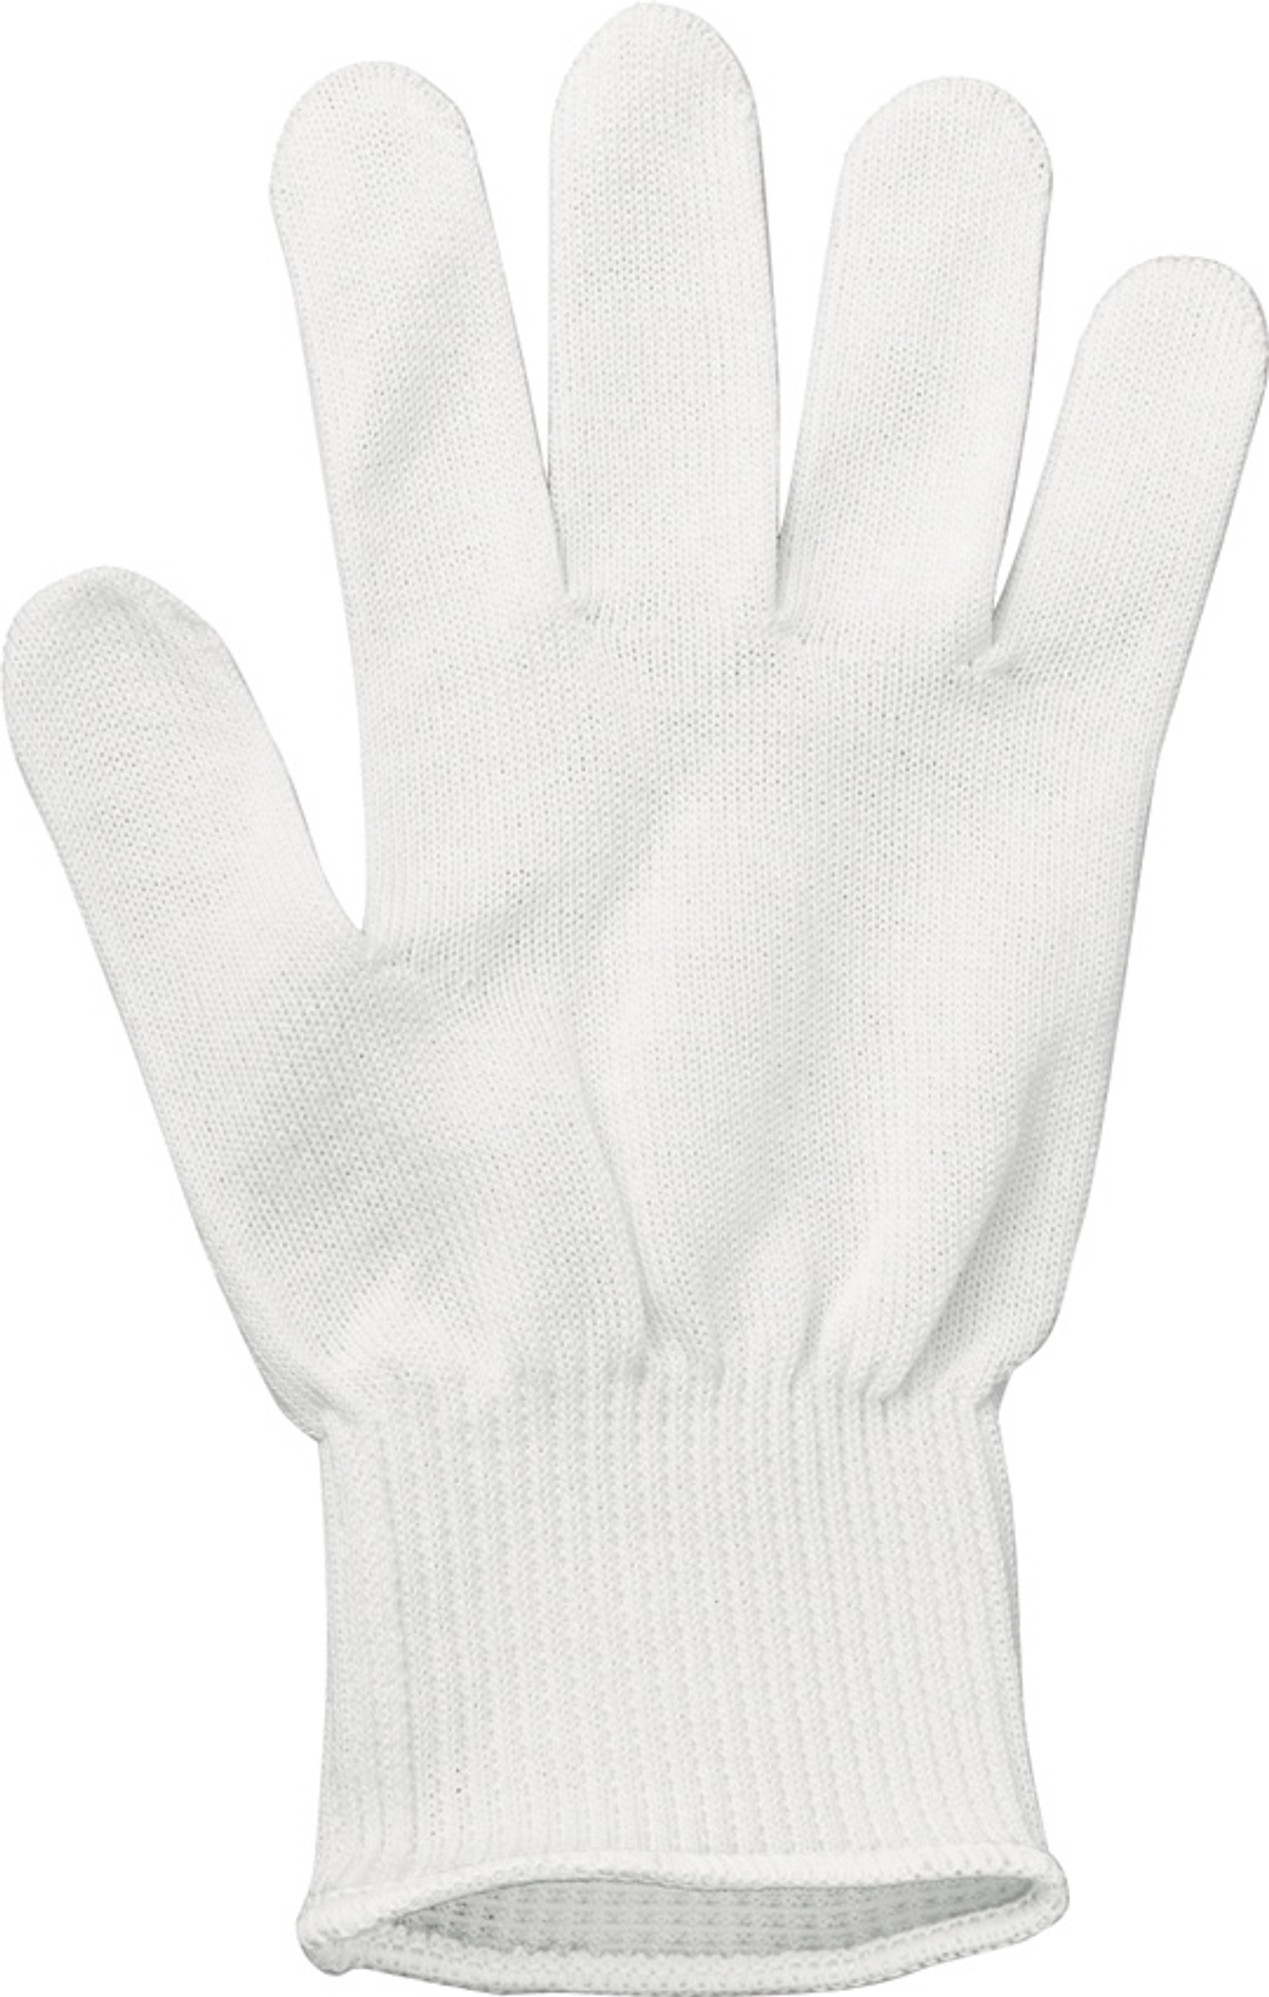 Cut Resistant Glove Large